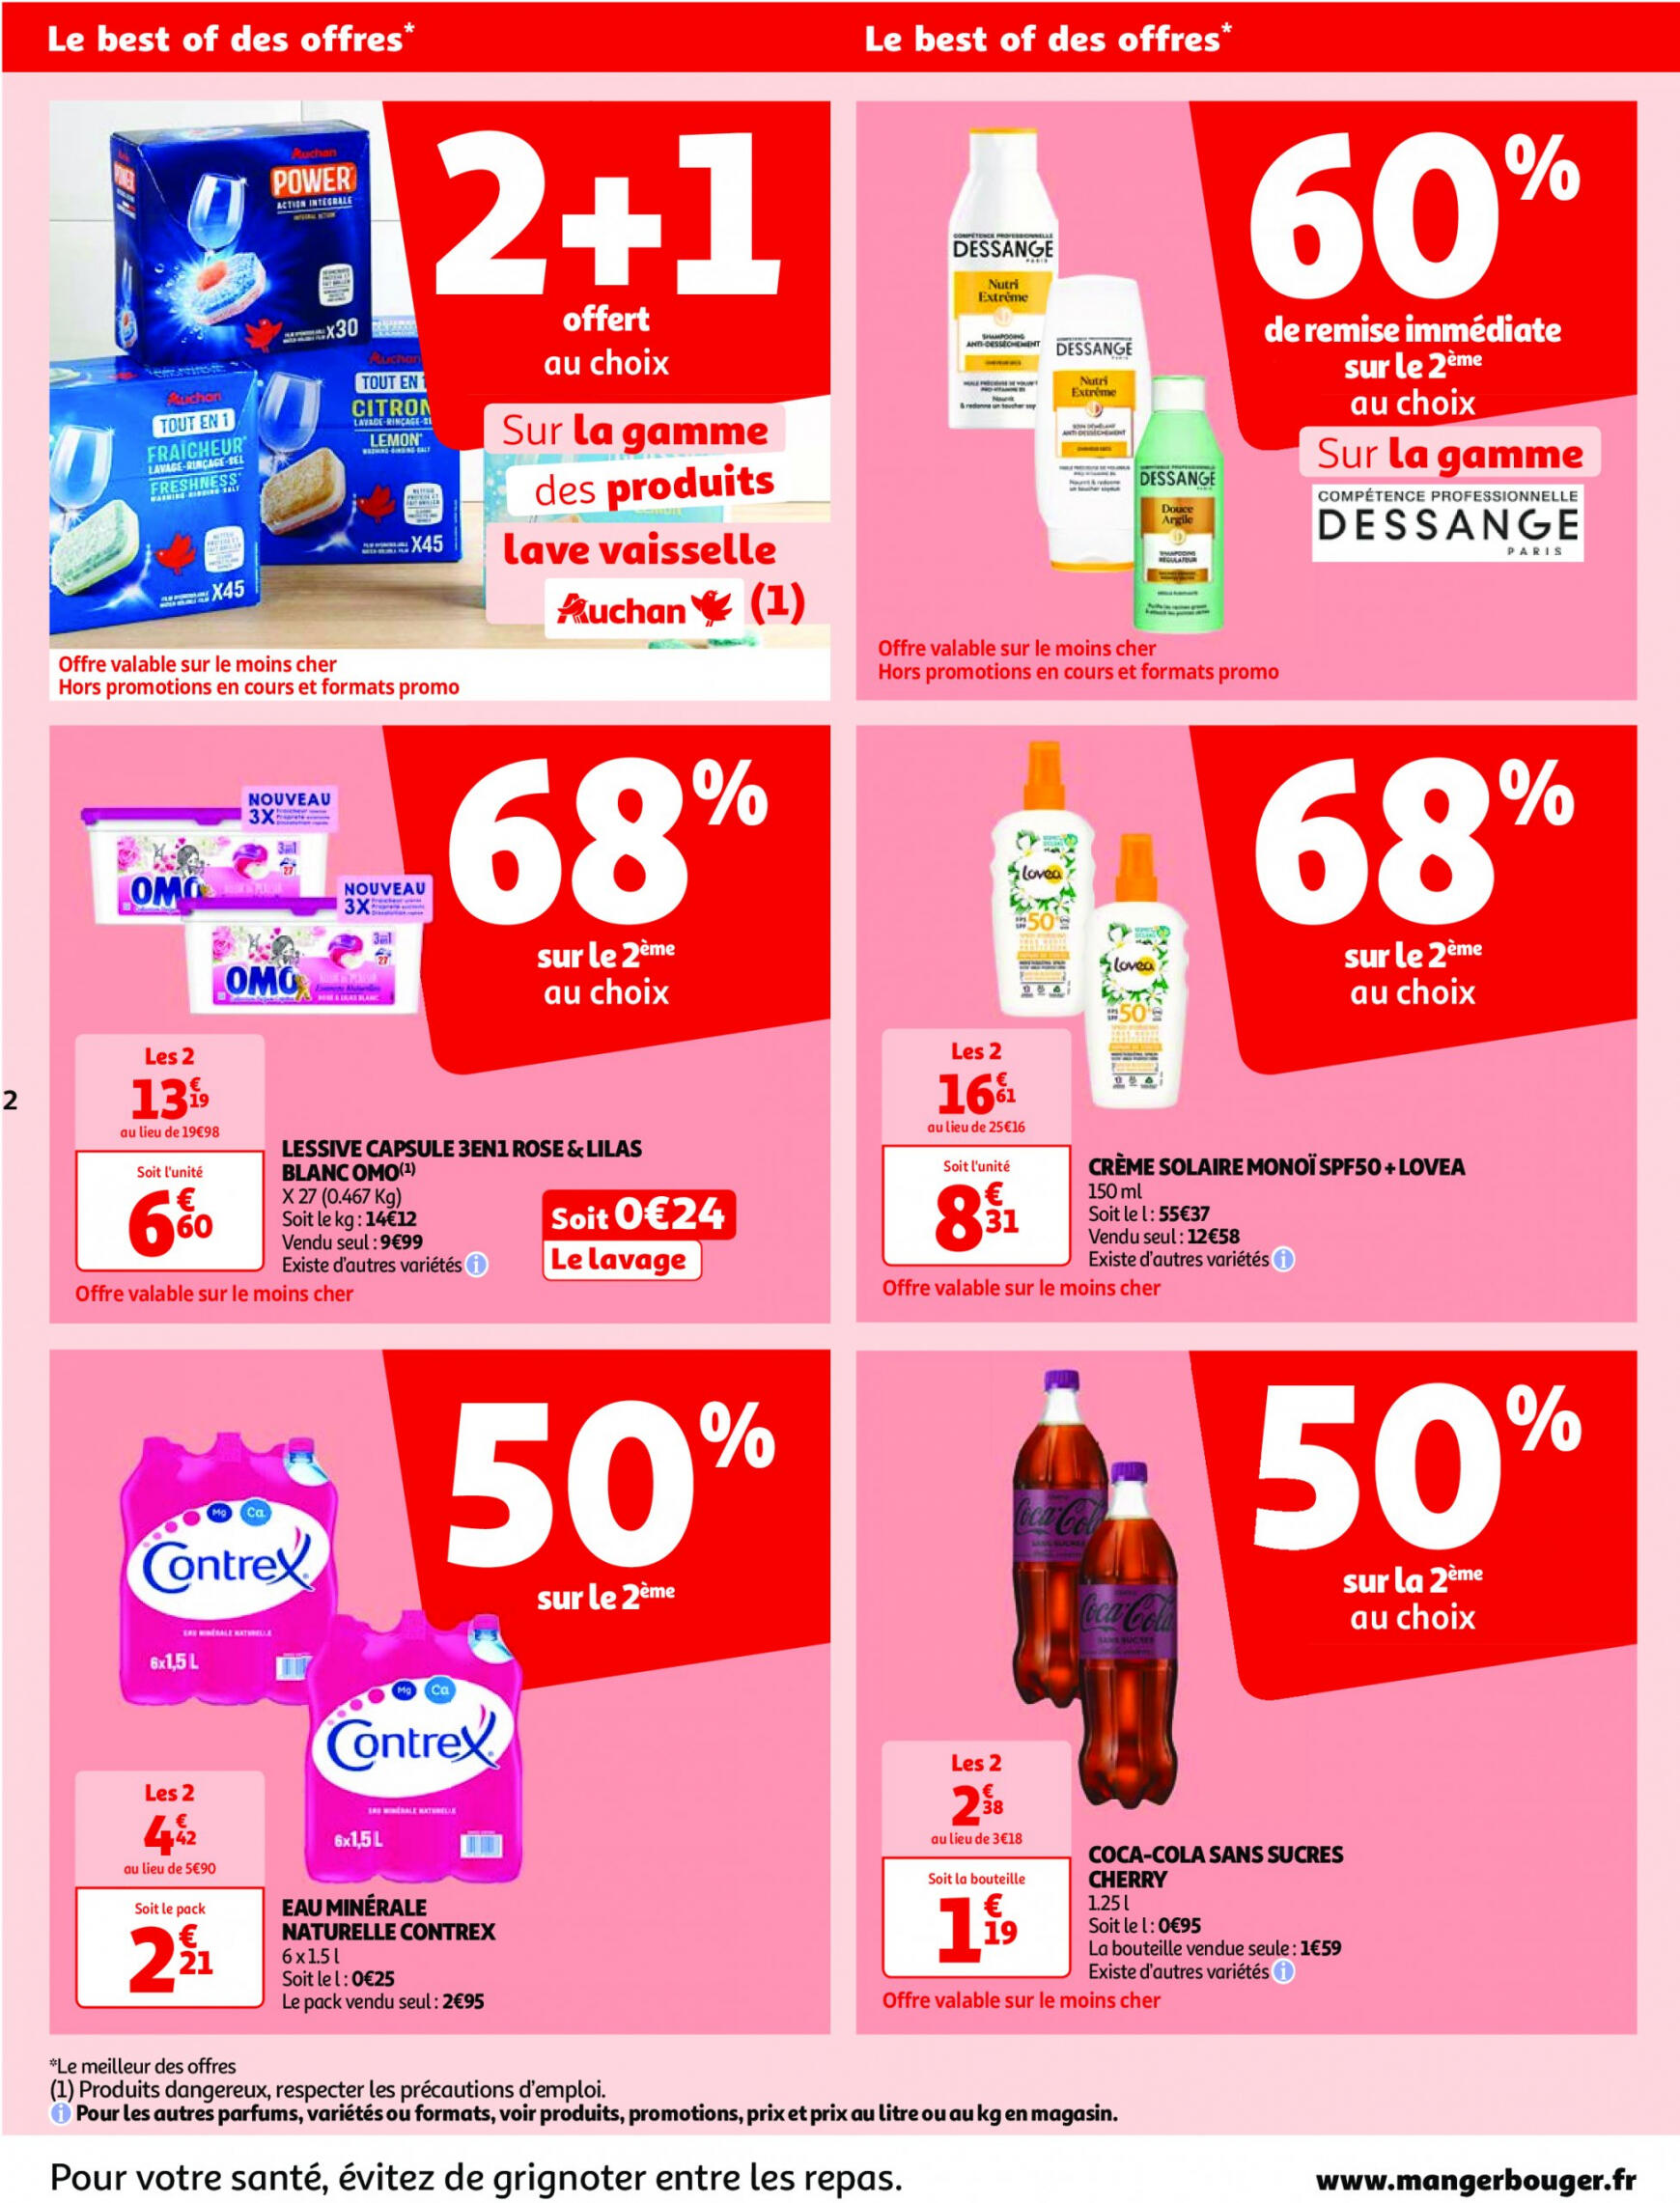 auchan - Auchan - Nos surgelés ont tout bon folder huidig 14.05. - 21.05. - page: 2